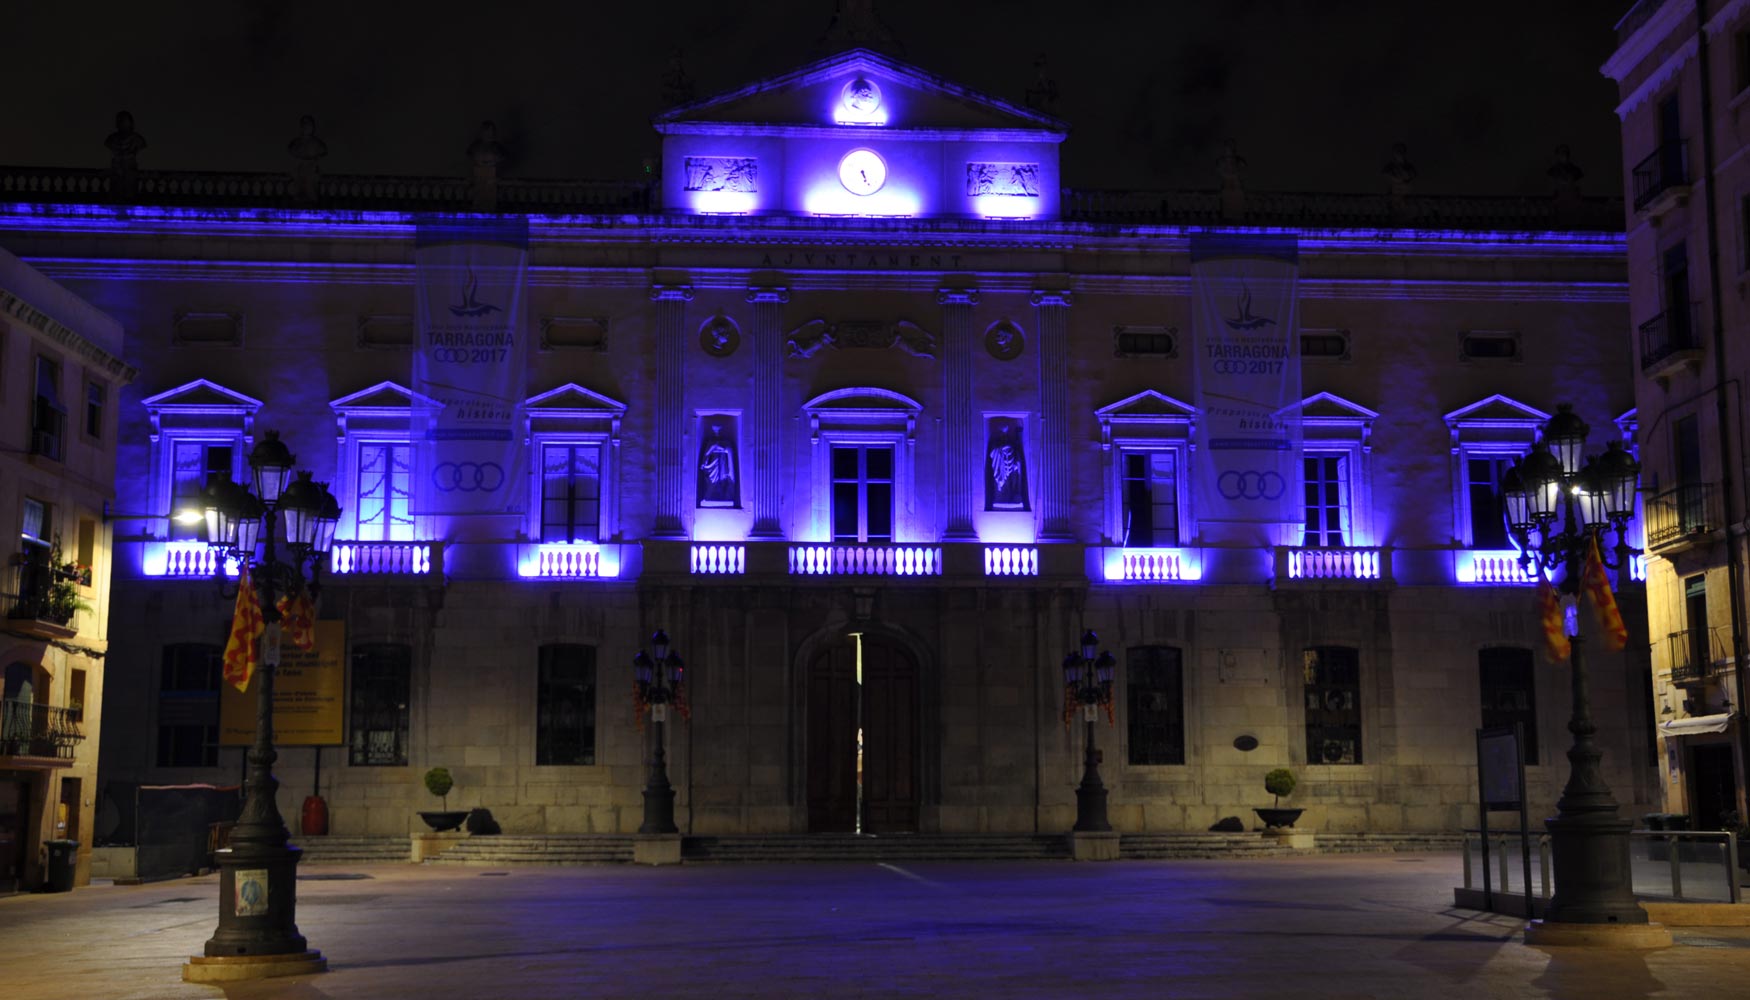 La fachada del Ayuntamiento de Tarragona iluminada con leds